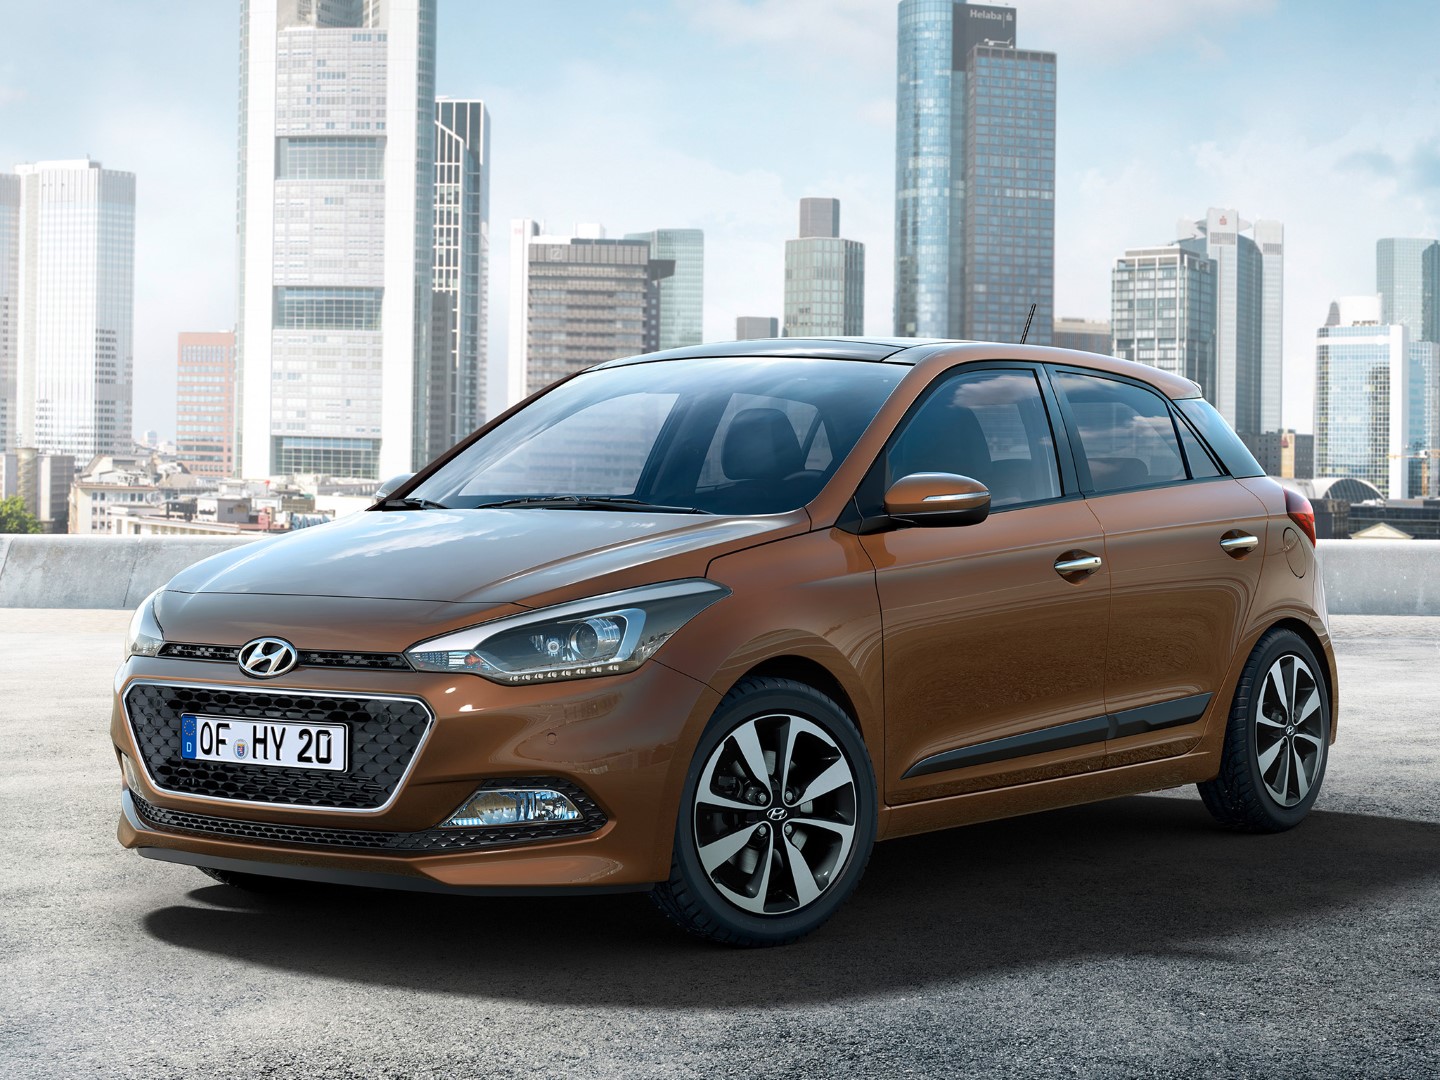 Nowy Hyundai i20 przegląd polskiego cennika hitu